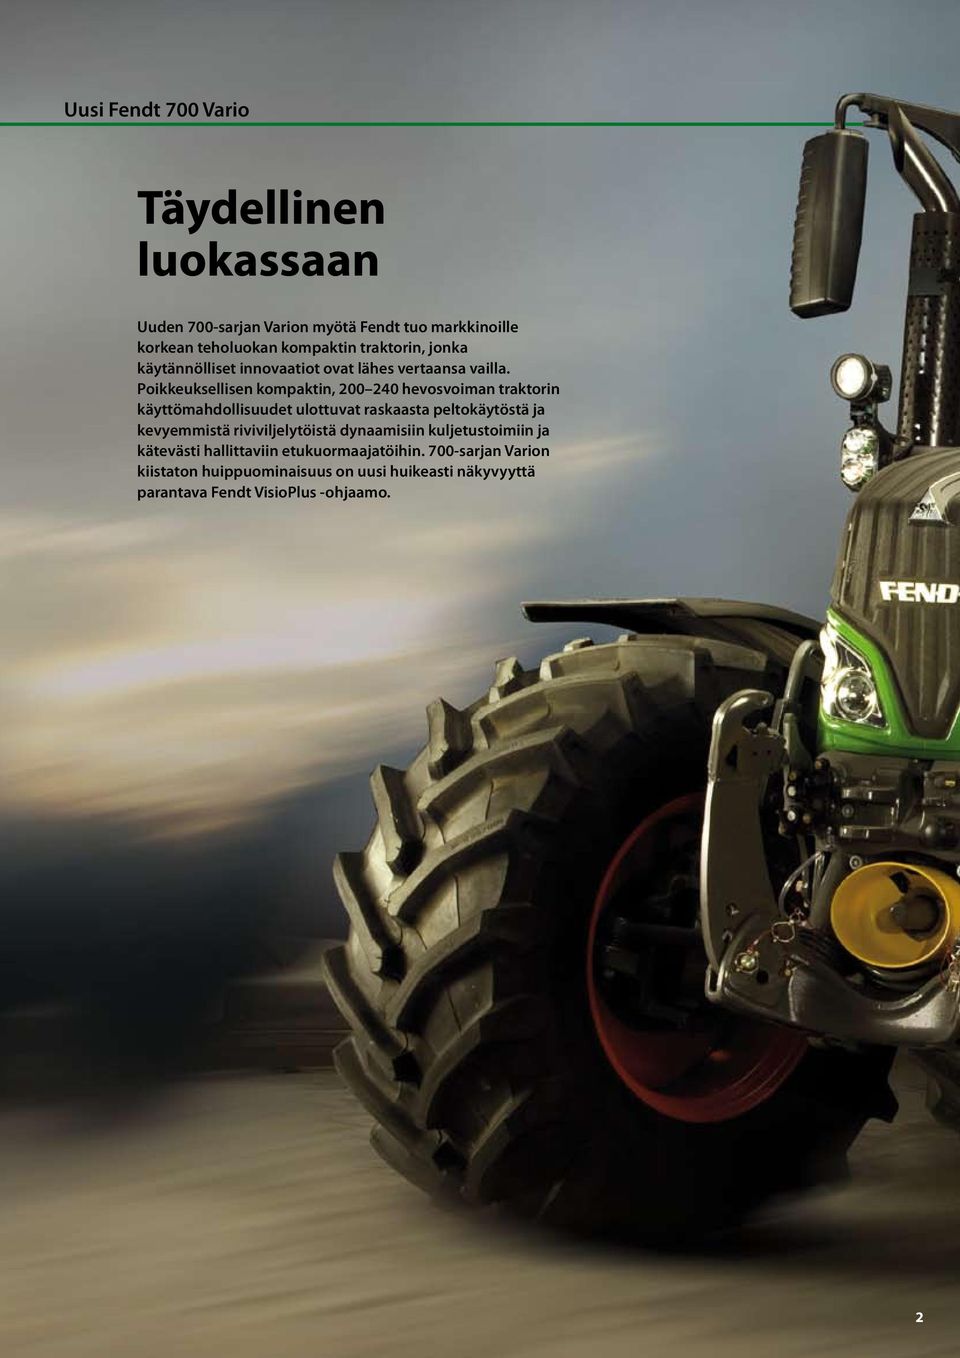 Poikkeuksellisen kompaktin, 200 240 hevosvoiman traktorin käyttömahdollisuudet ulottuvat raskaasta peltokäytöstä ja kevyemmistä